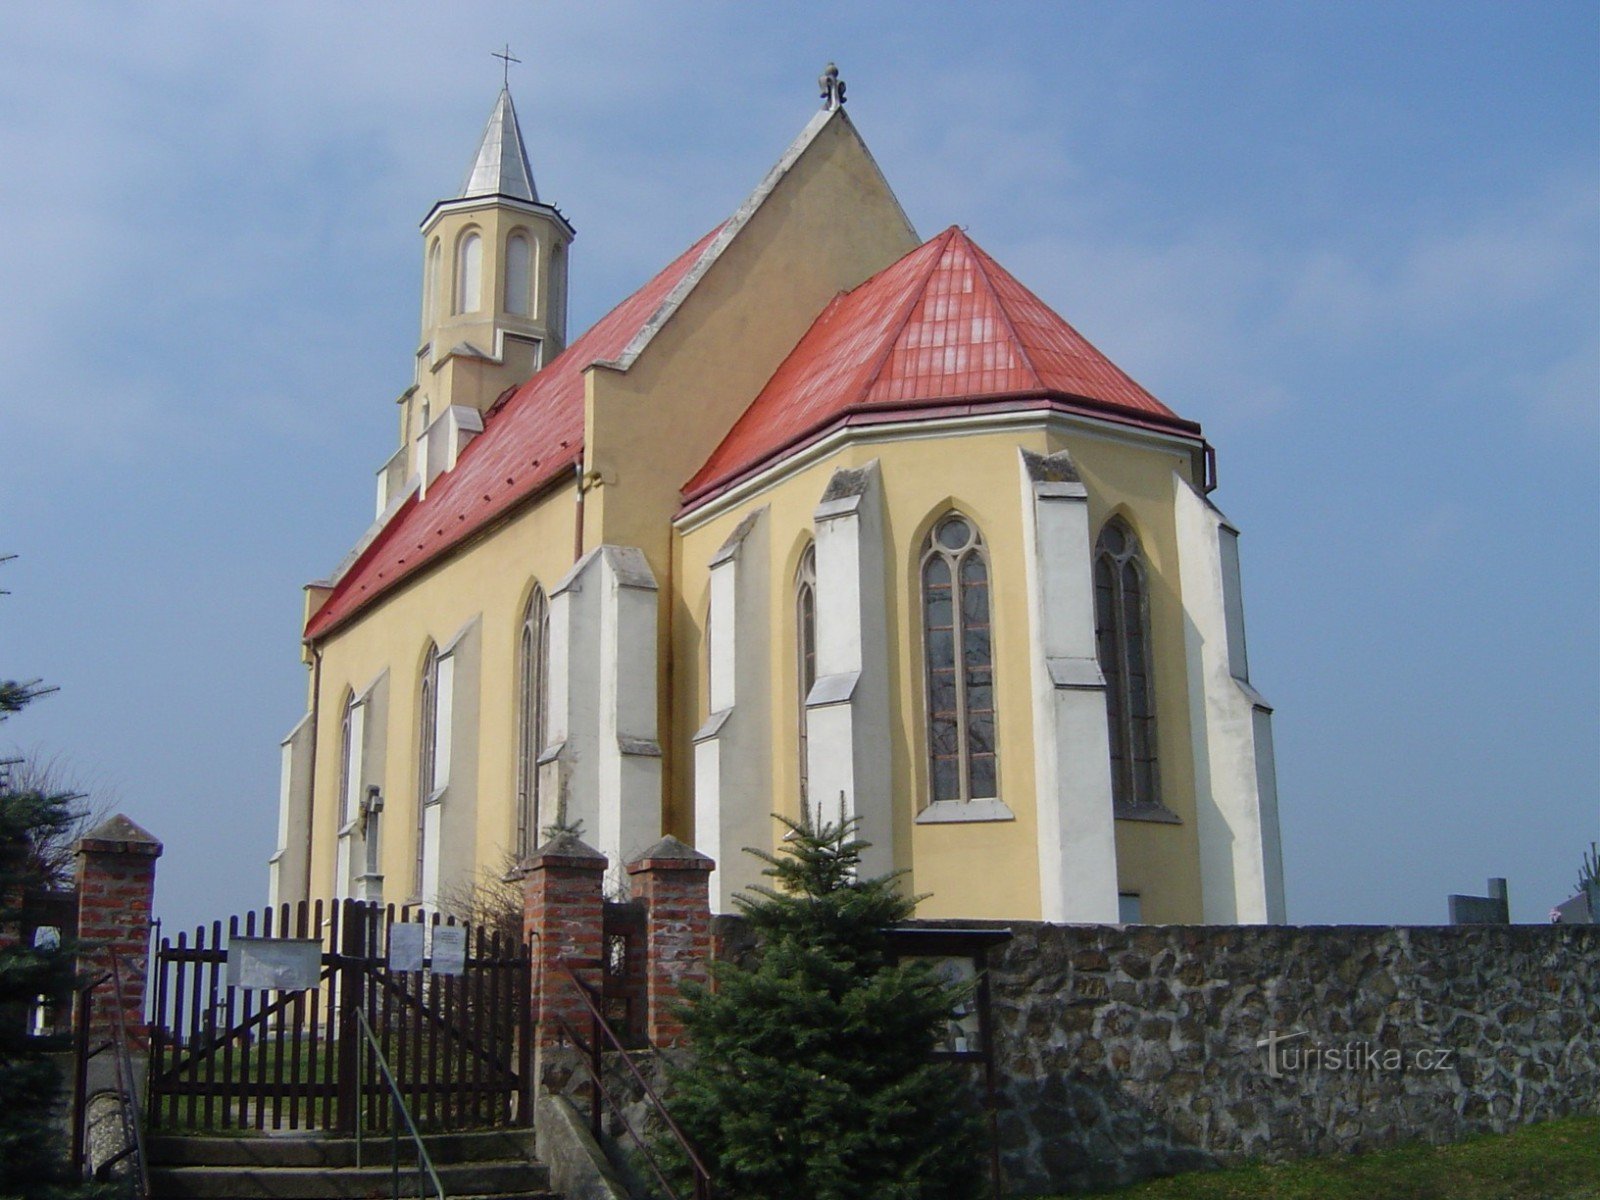 St. Andrews kyrka i Slezské Pavlovice